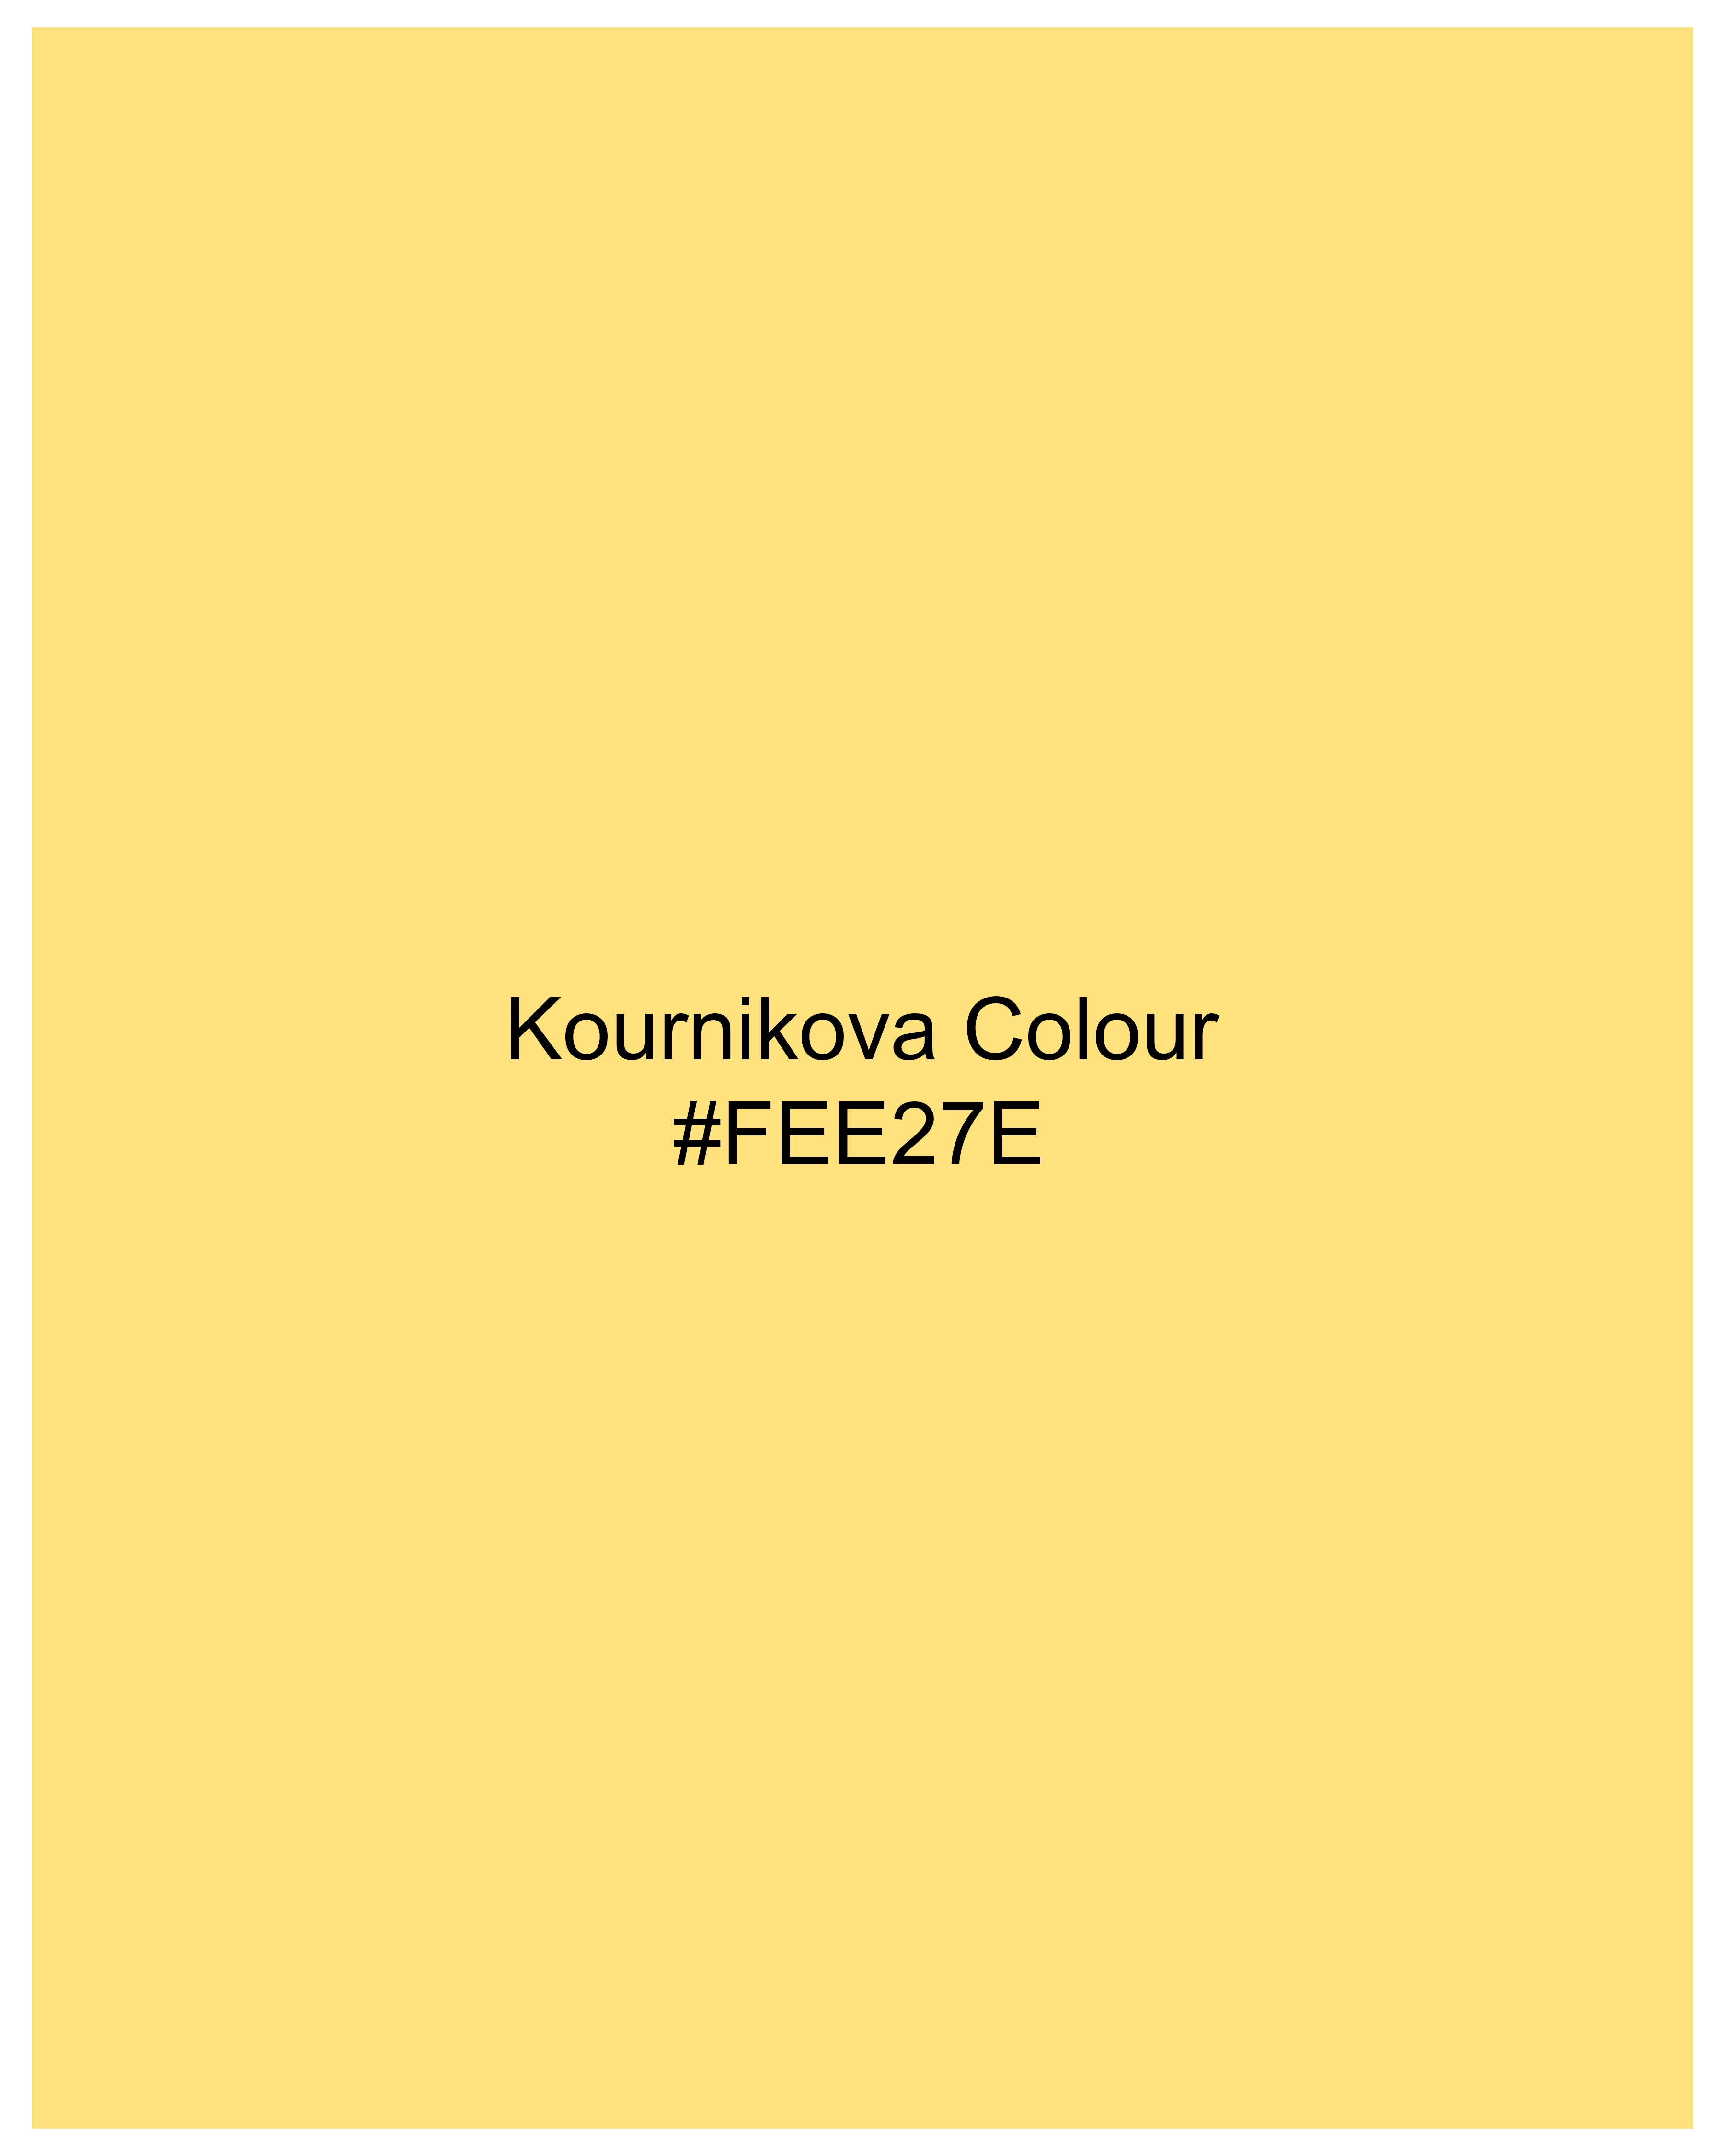 Kournikova Yellow Organic Cotton Pique Polo TS824-S, TS824-M, TS824-L, TS824-XL, TS824-XXL